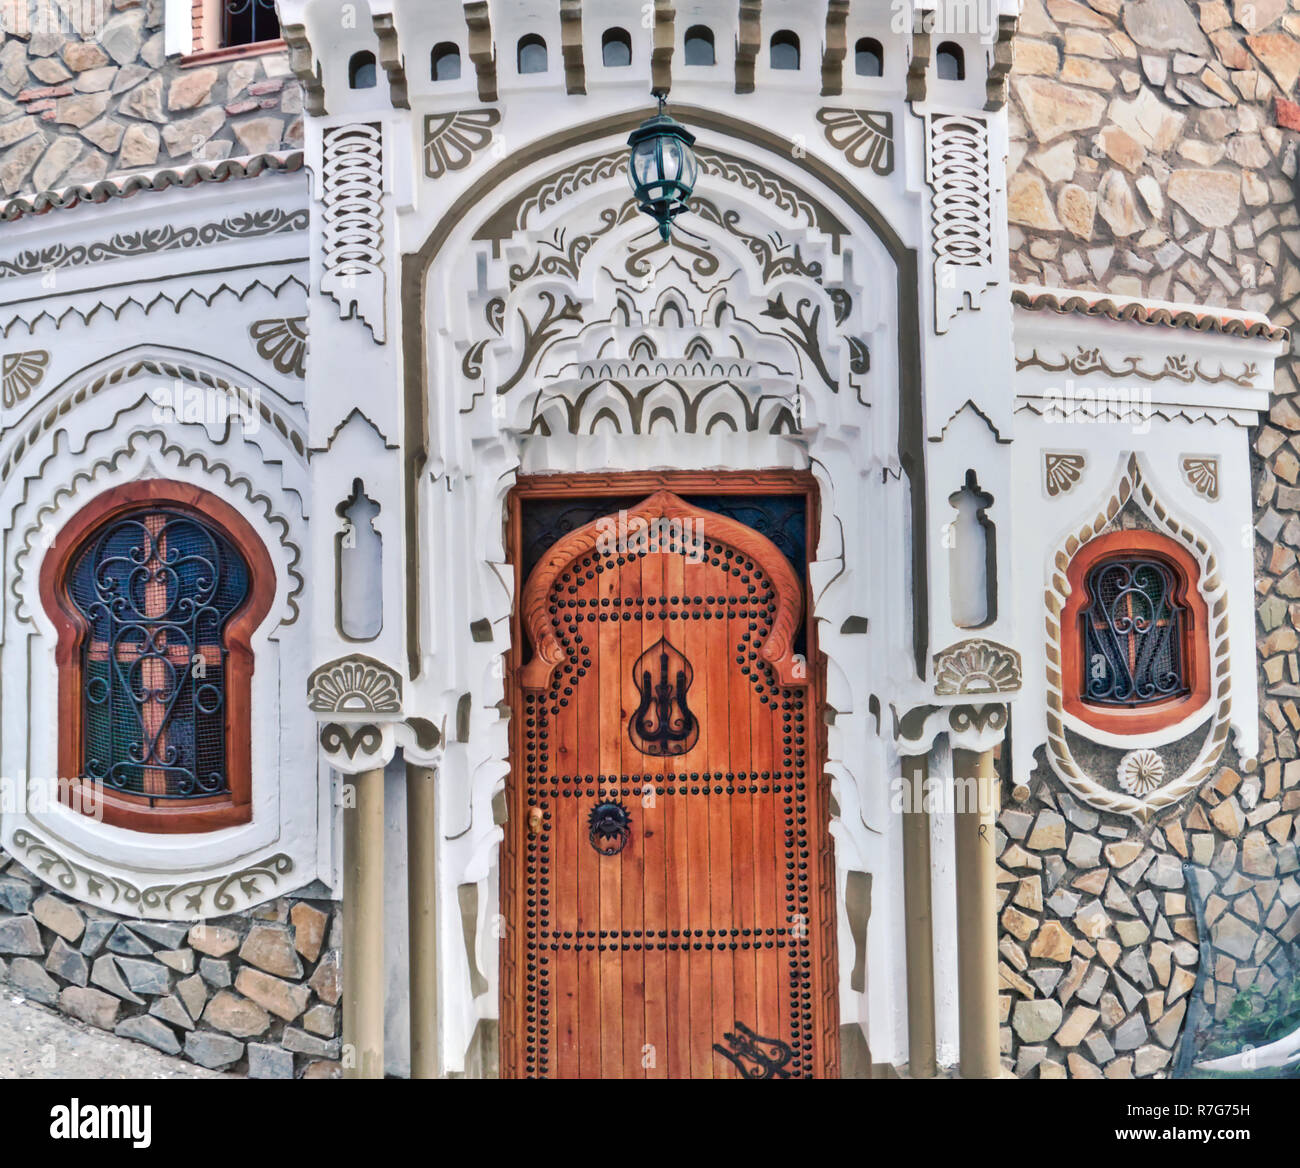 Très belle porte et fenêtre d'une maison dans la Médina de Chefchaouen, l'une des villes les plus visités par les touristes dans le nord du Maroc Banque D'Images